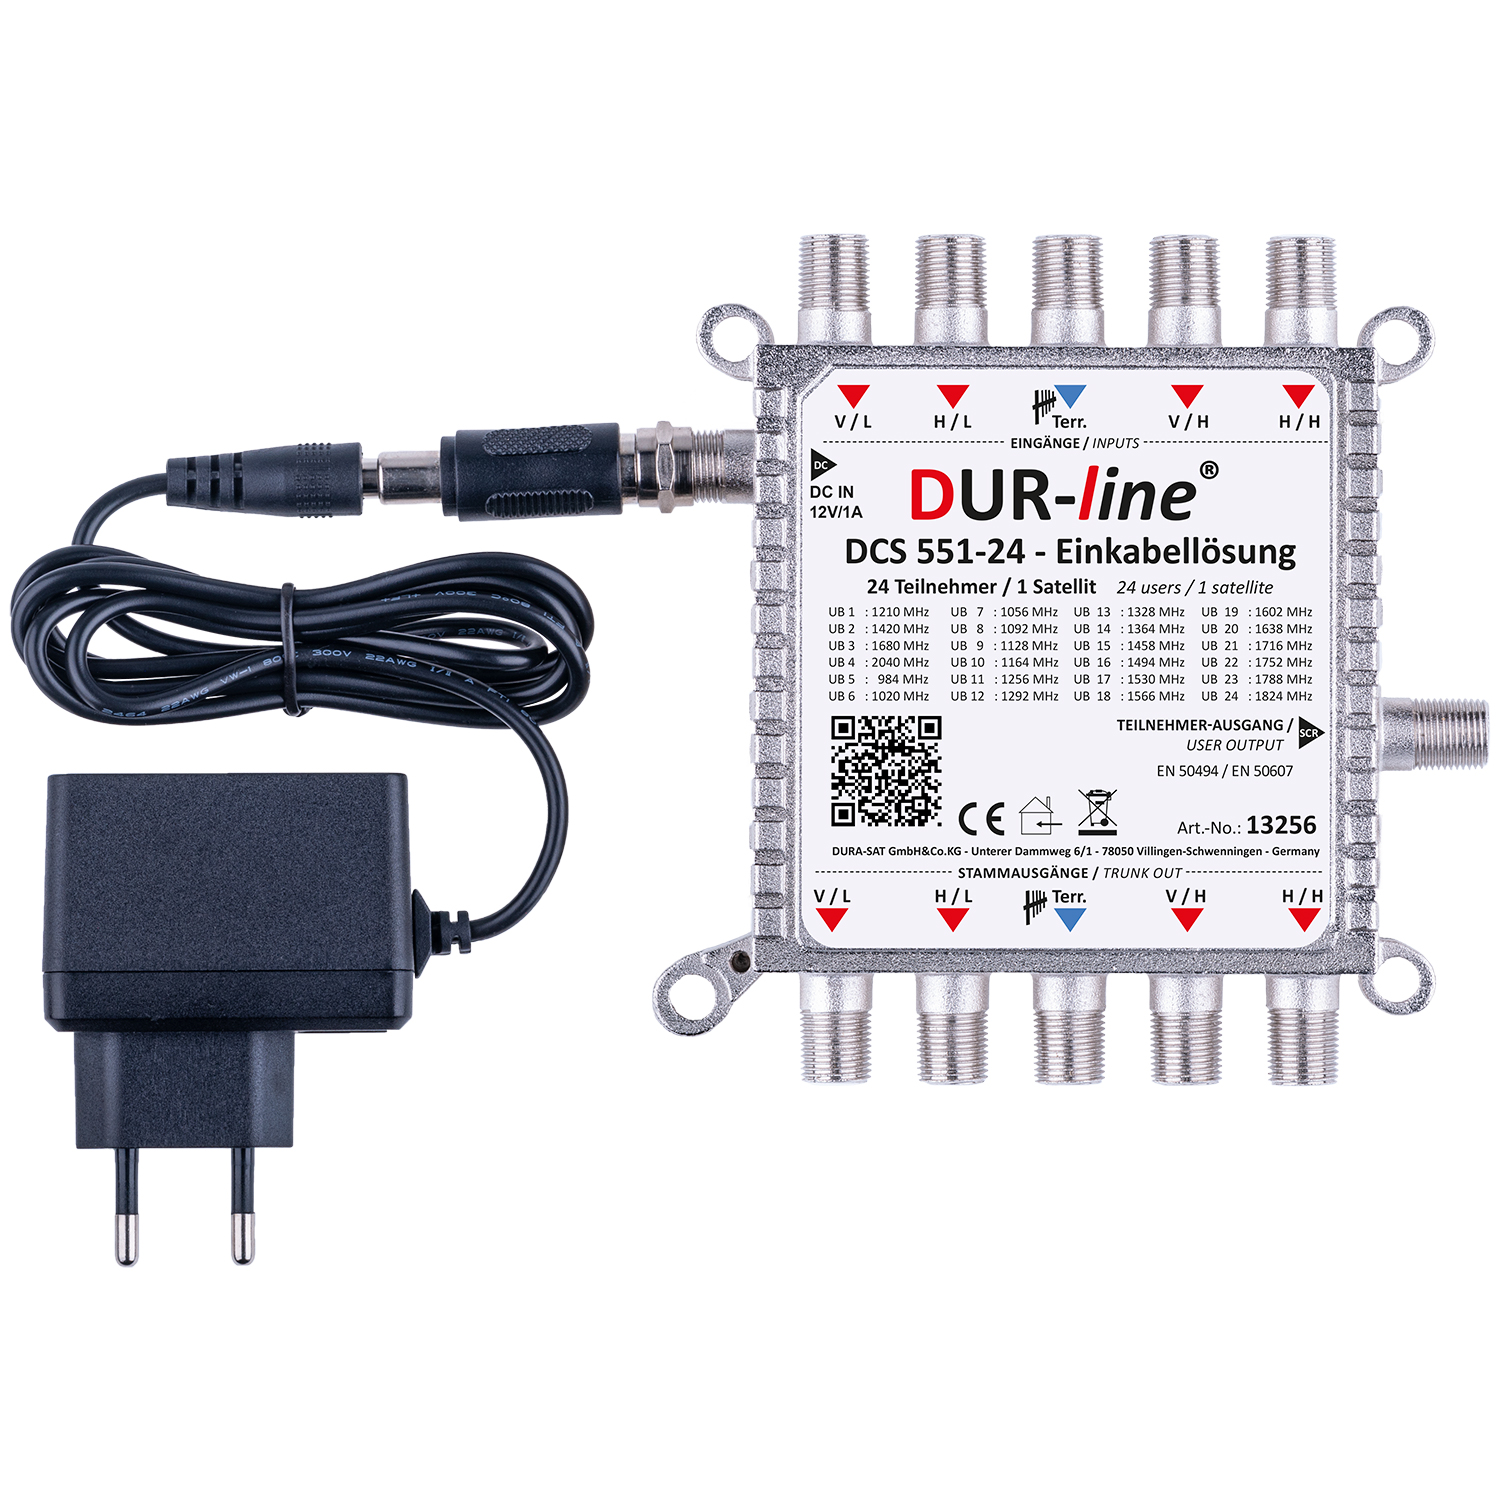 DUR-line DCS 551-24 - Einkabellösung